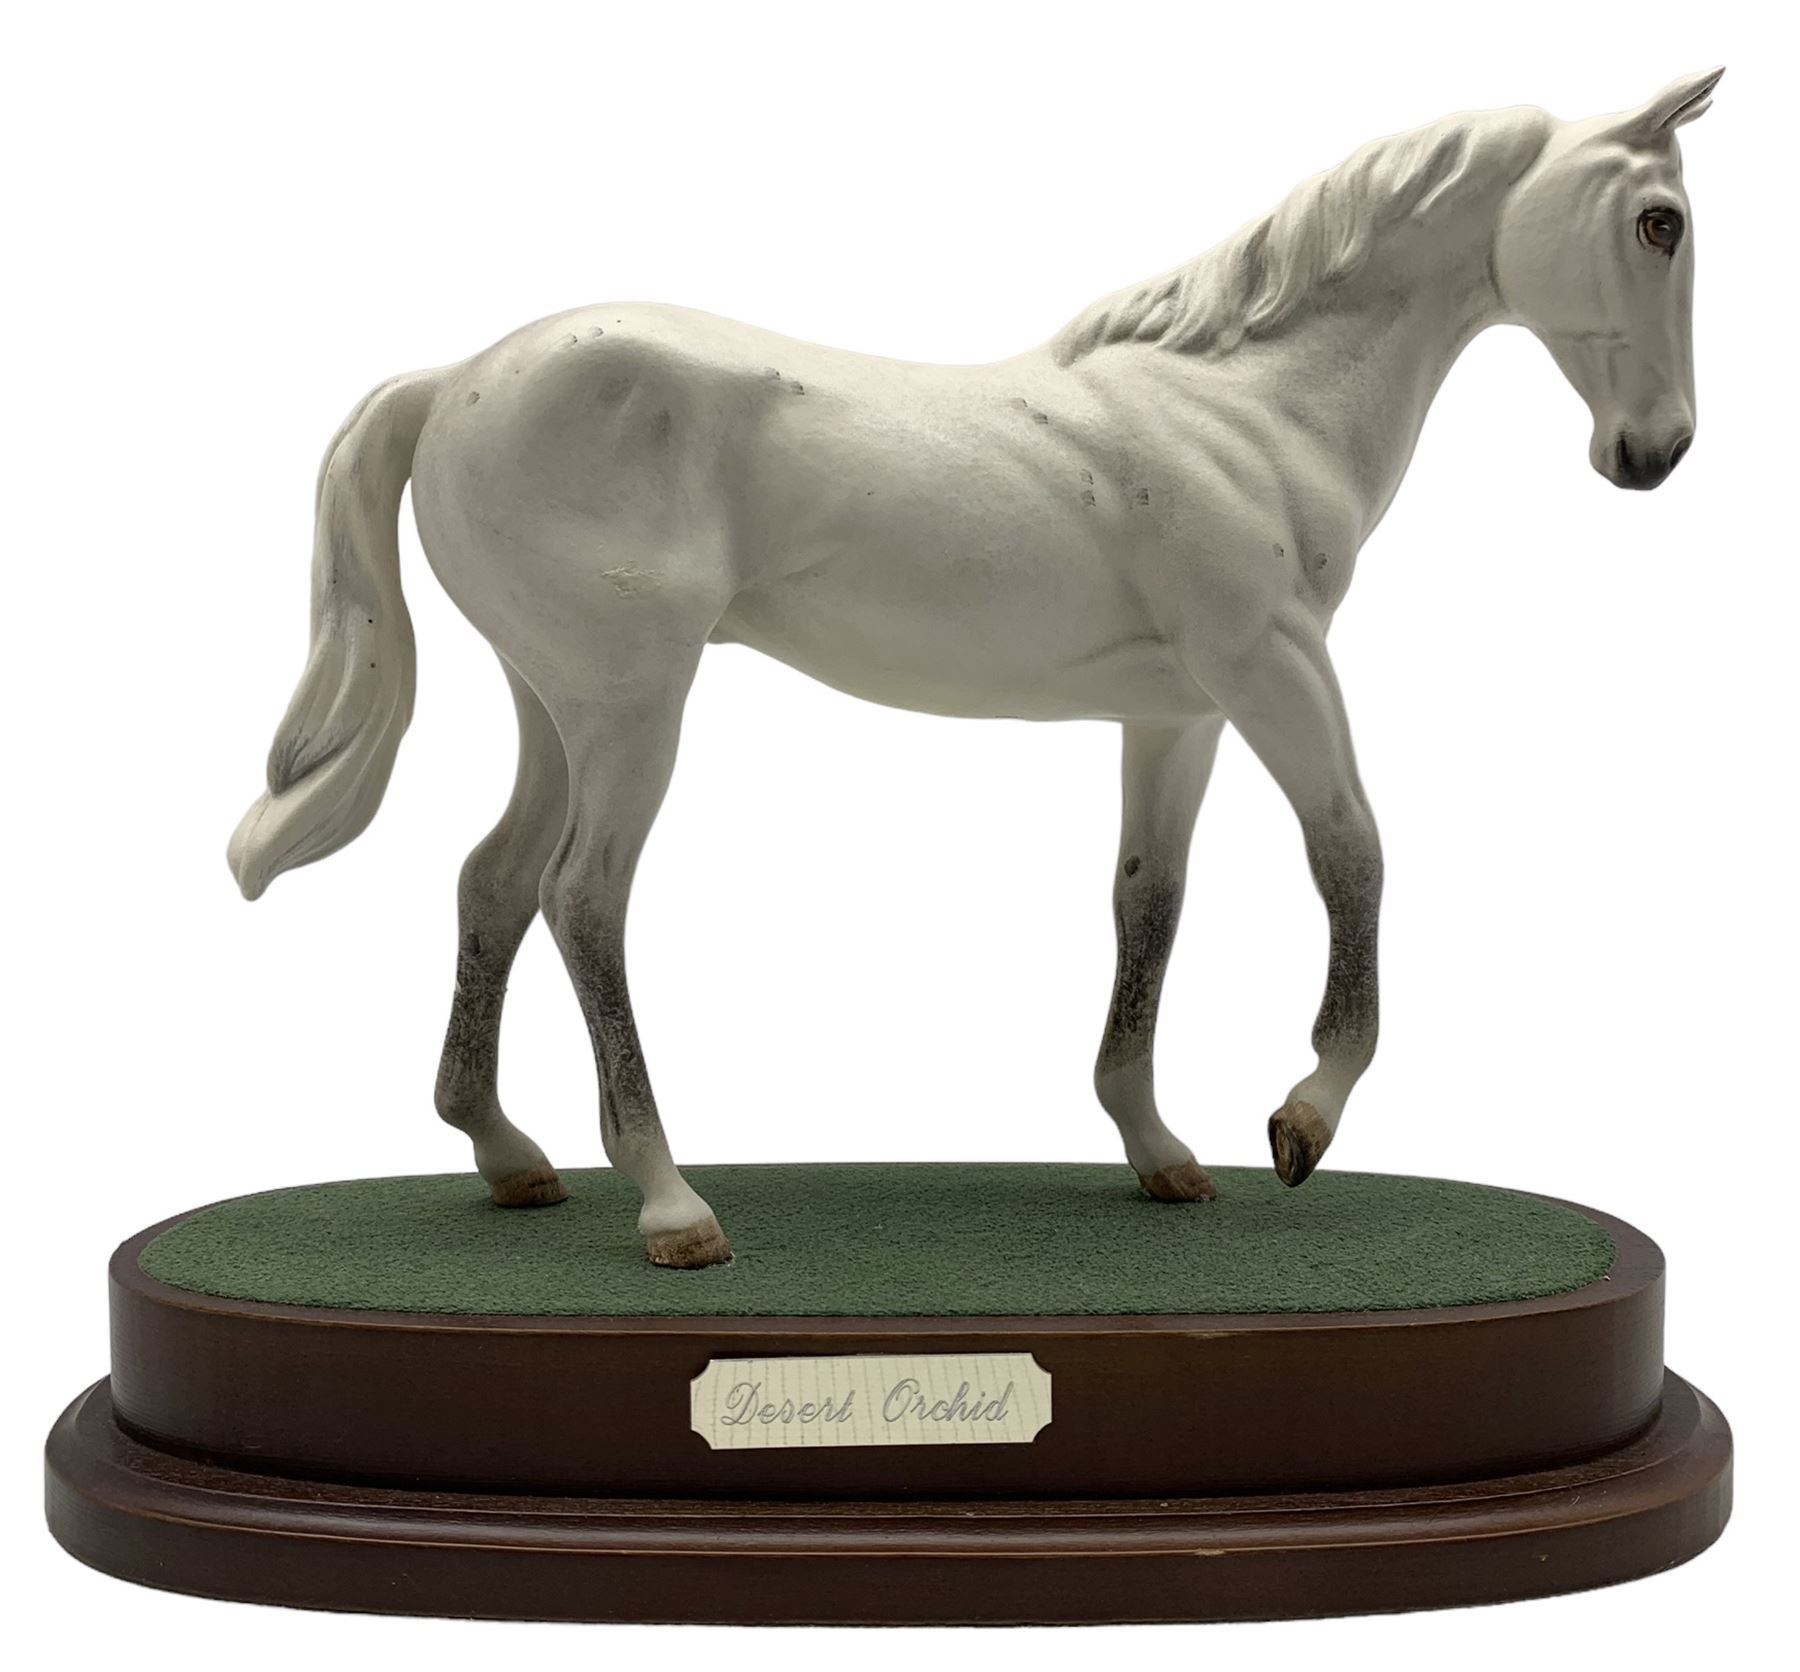 Royal Doulton 'Desert Orchid' porcelain horse